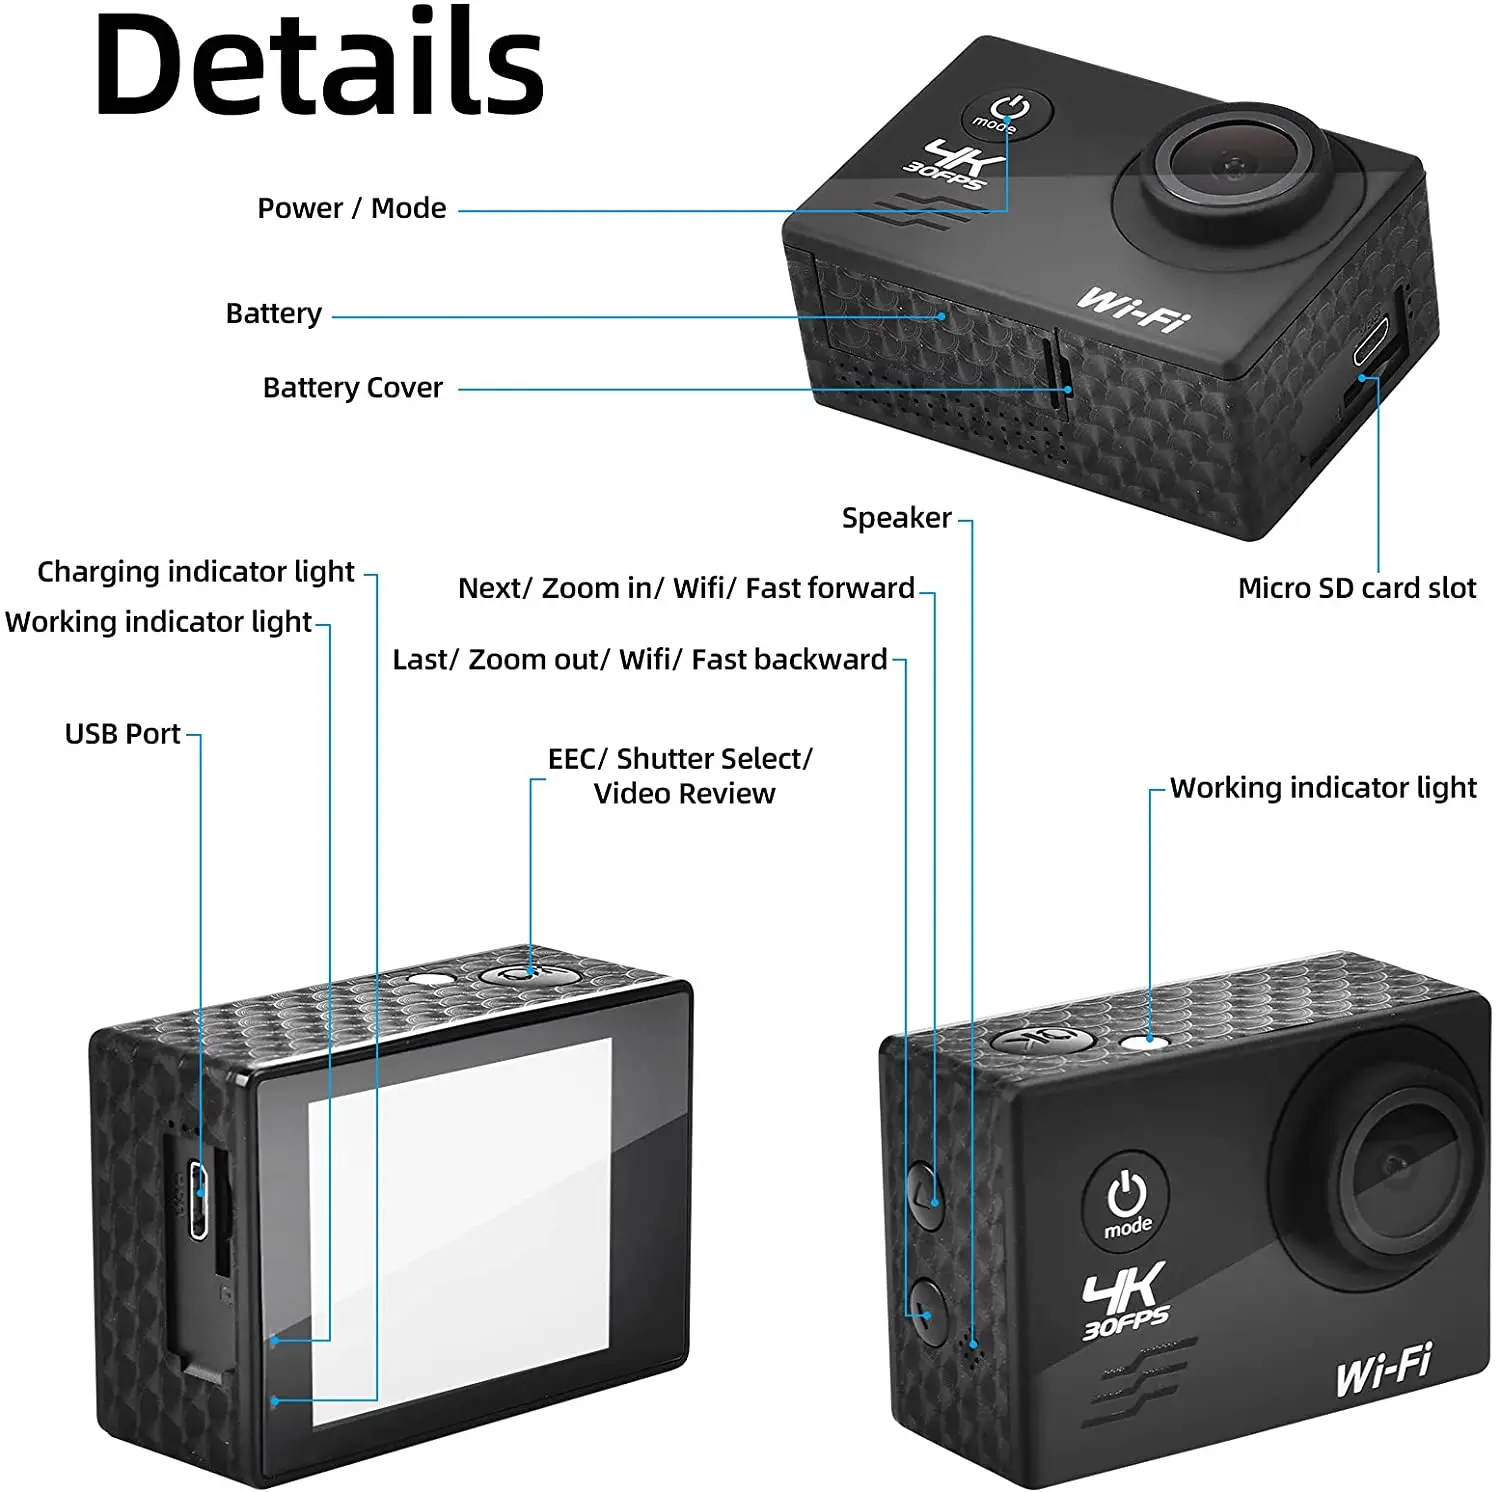 Камеры горячая продажа камера Ultra HD 4K 30 кадров в секунду Wi -Fi 2.0inch 170d подводный водонепроницаемый шлем видео видеозапись спортивная камера